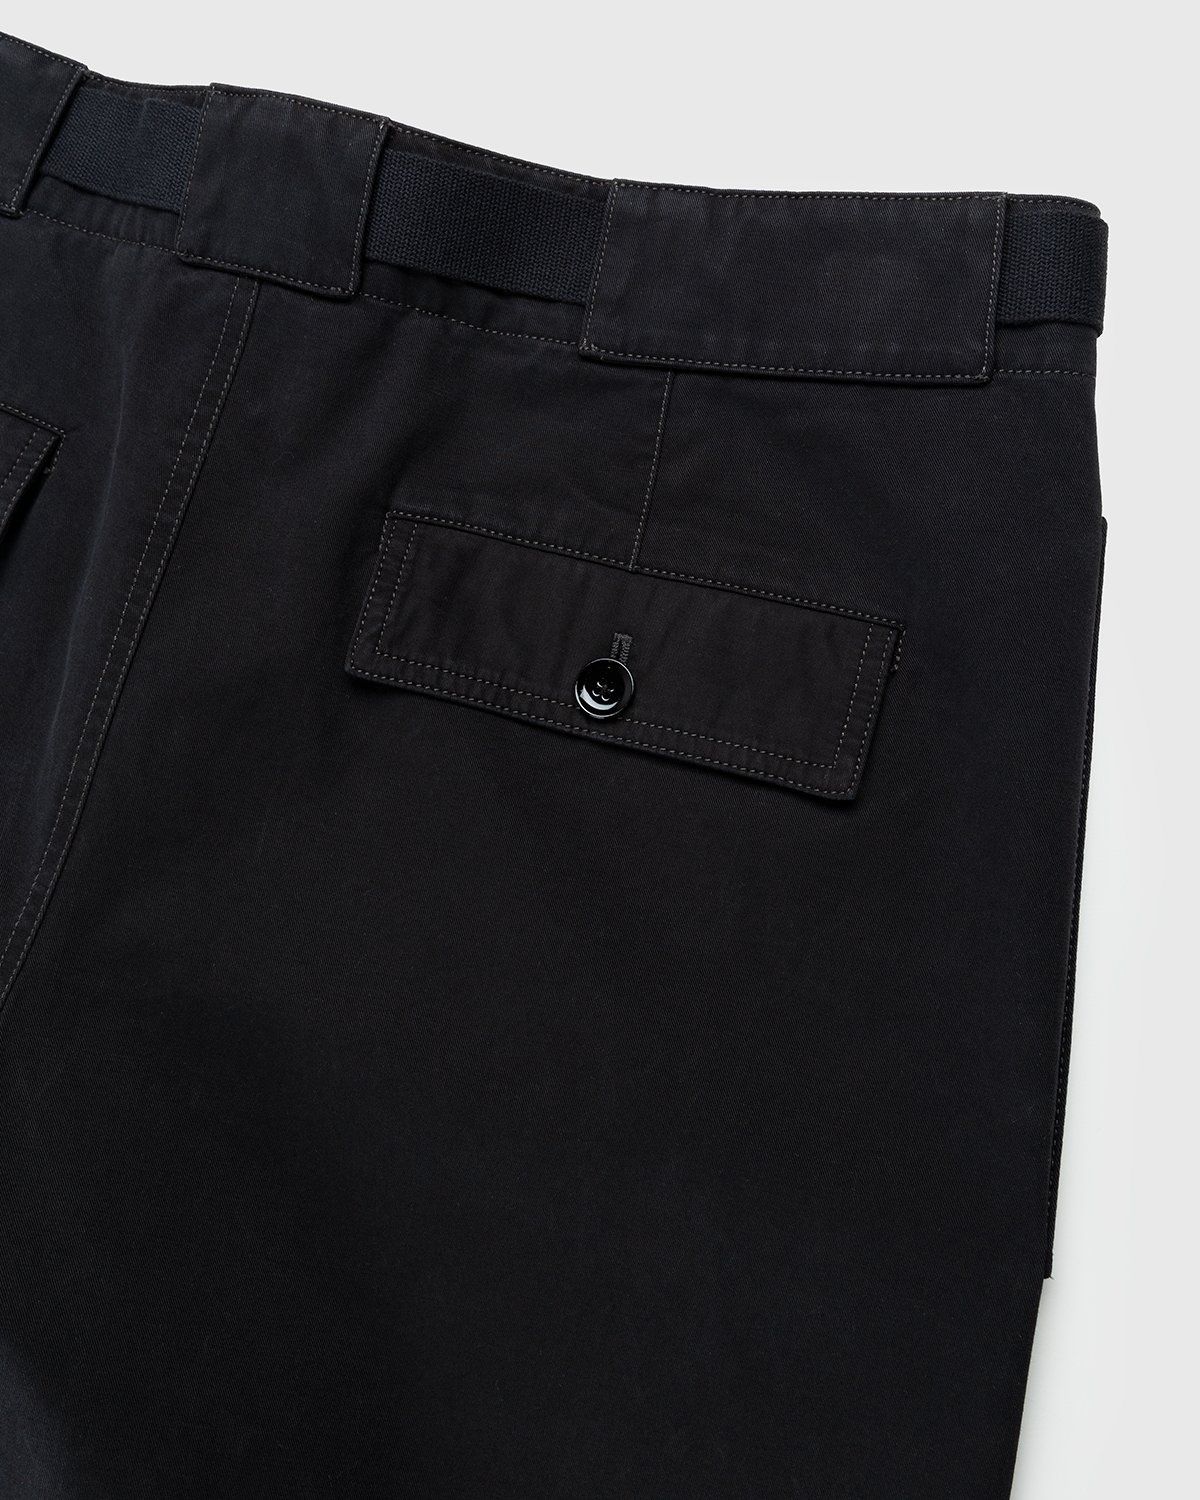 Lemaire – Utility Pants Black - Pants - Black - Image 3